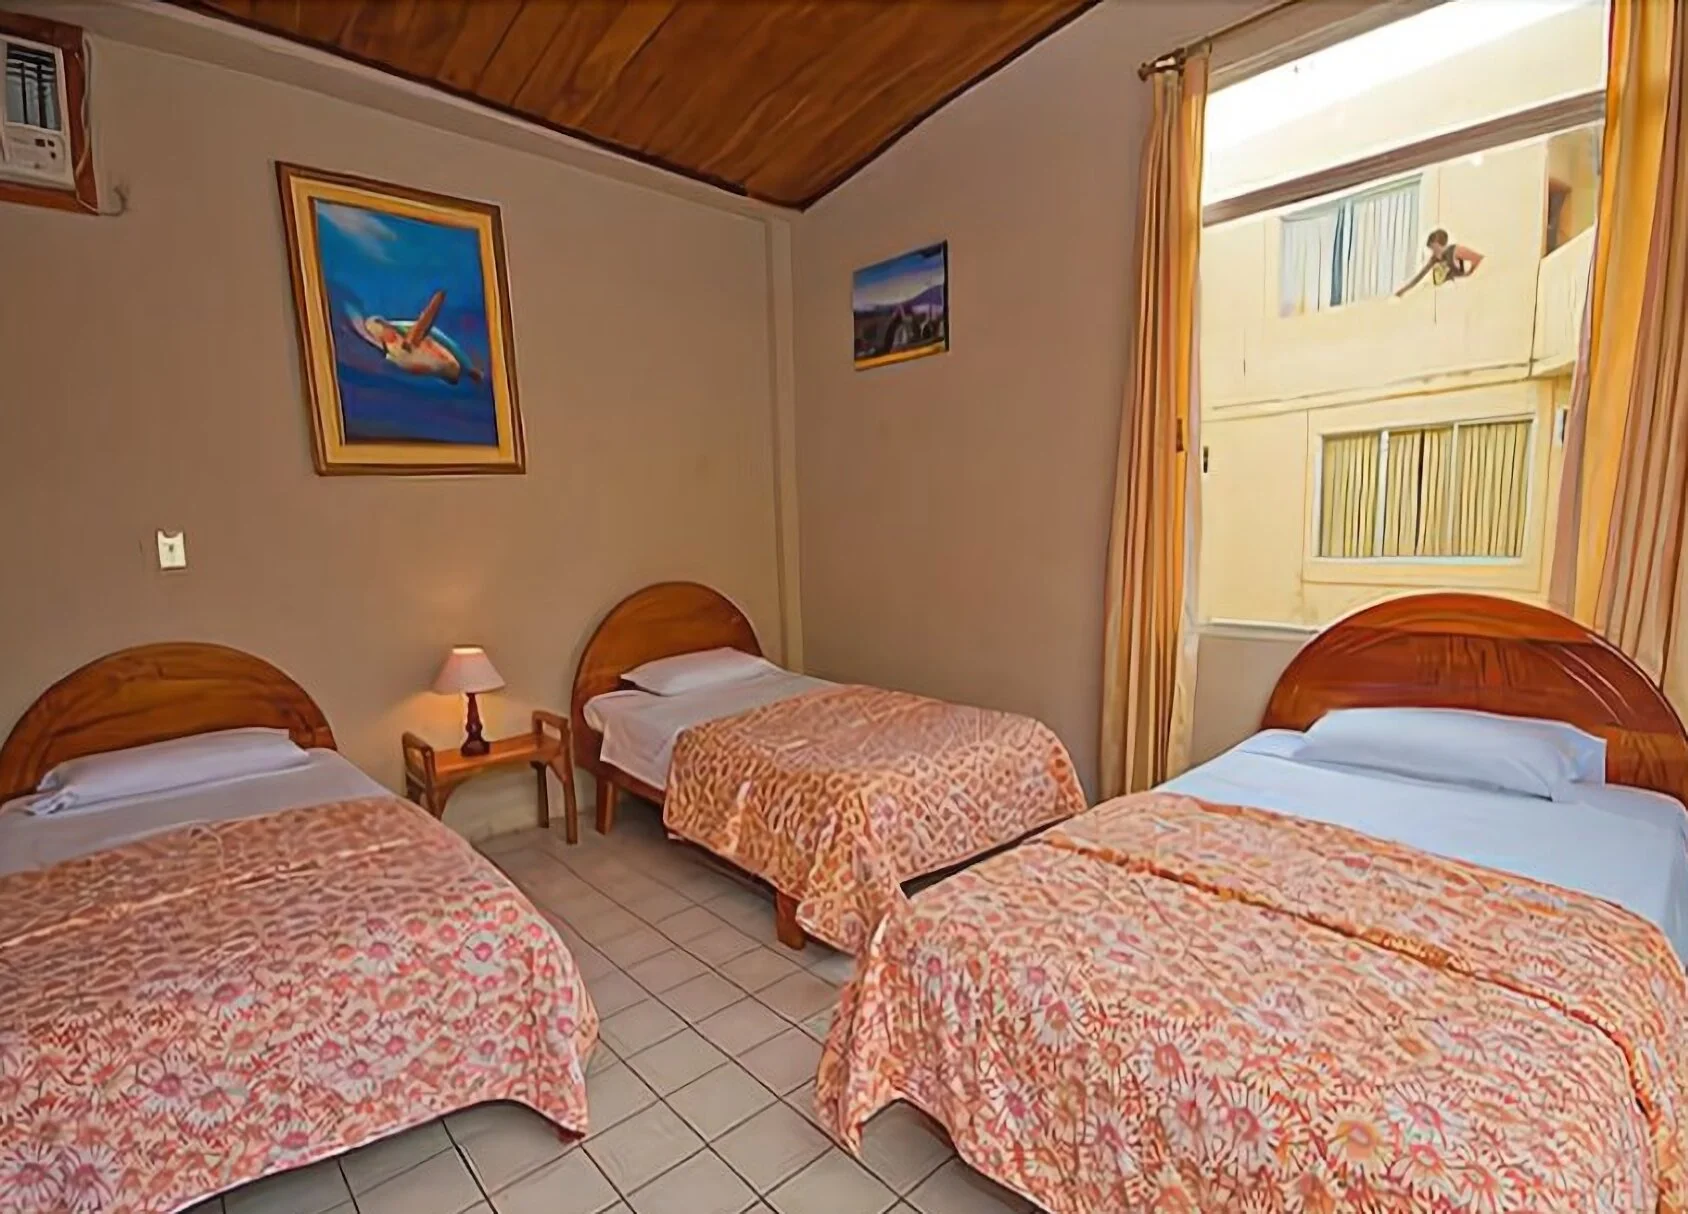 Hoteles-hotel-palm-garden-galapagos-13761